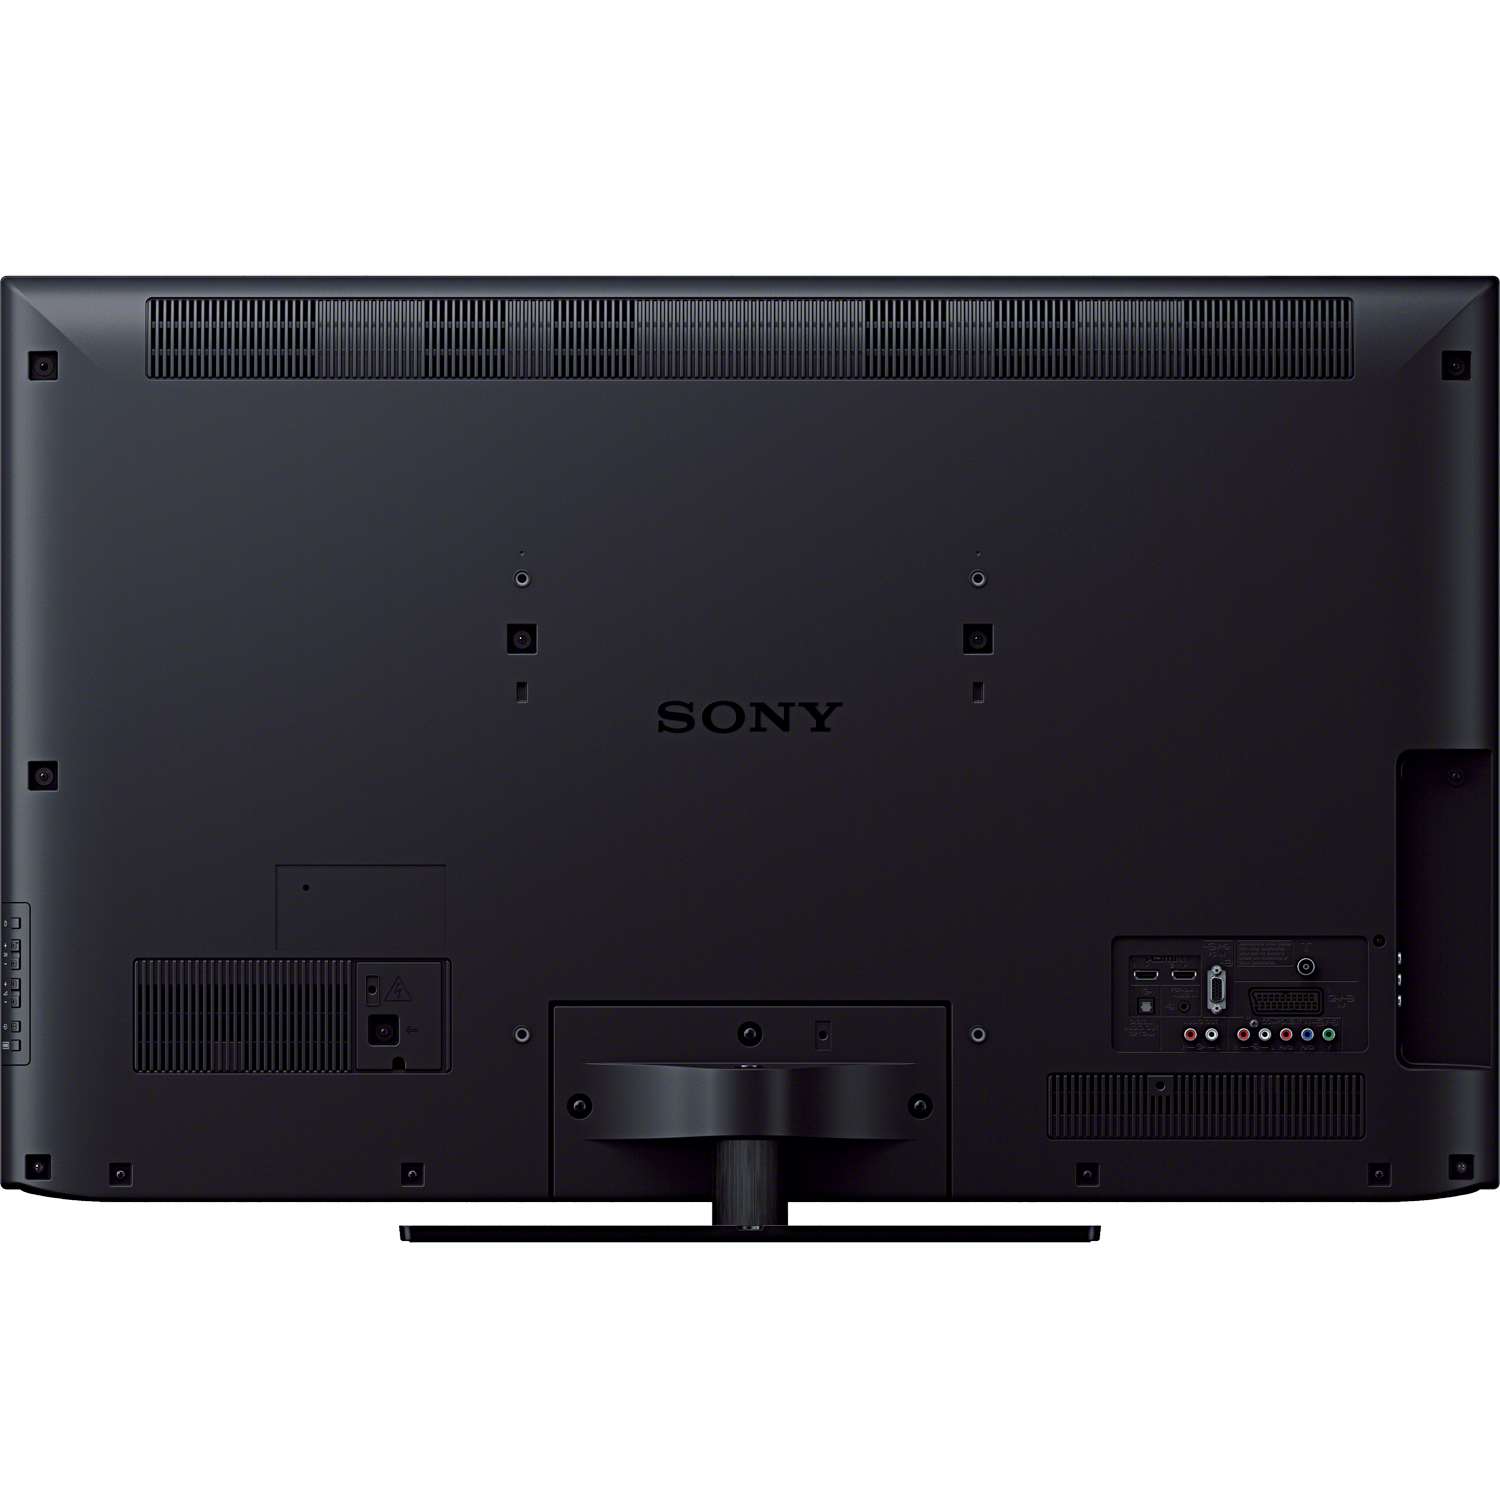 Sony Bravia Full HD 42 LED TV large image 0